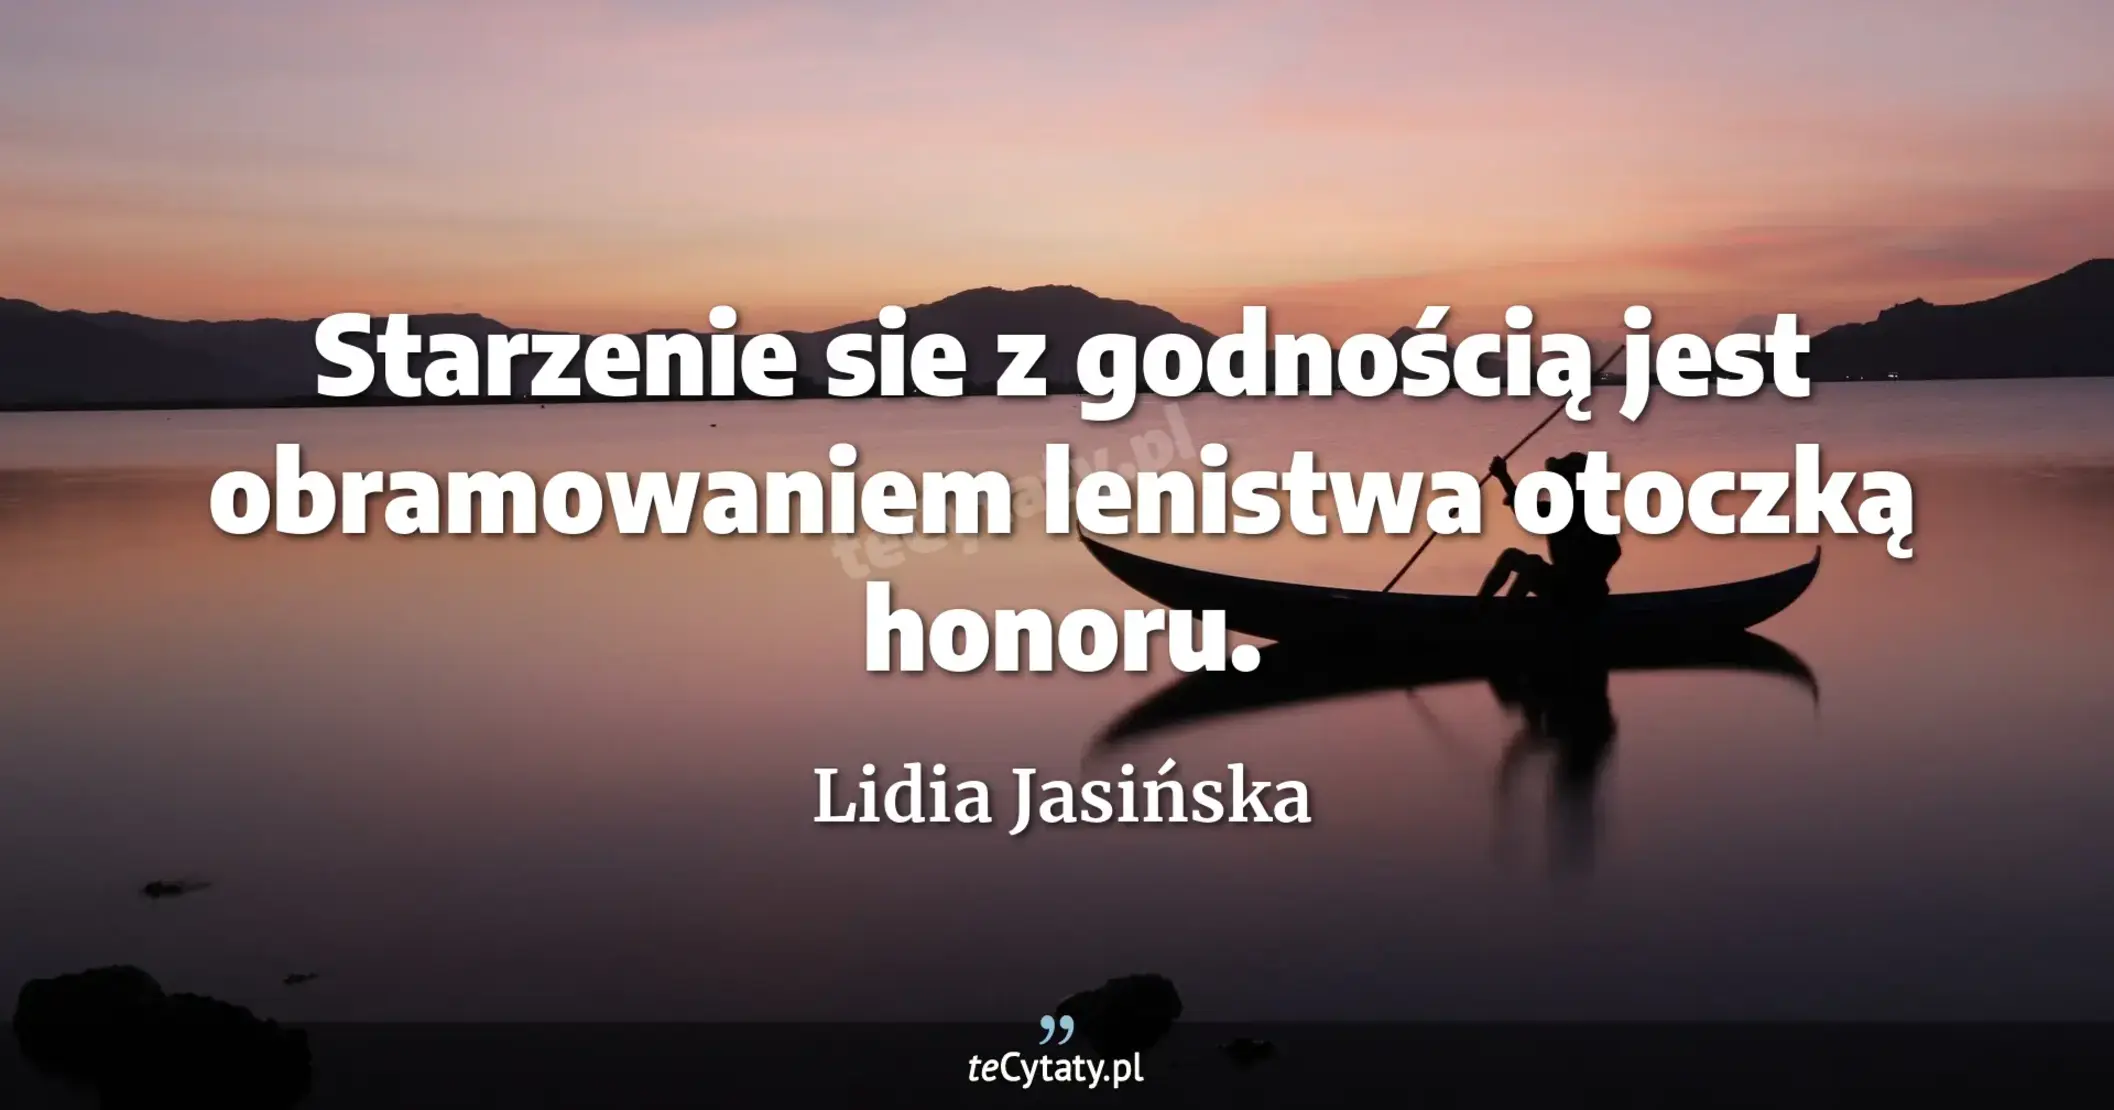 Starzenie sie z godnością jest obramowaniem lenistwa otoczką honoru. - Lidia Jasińska